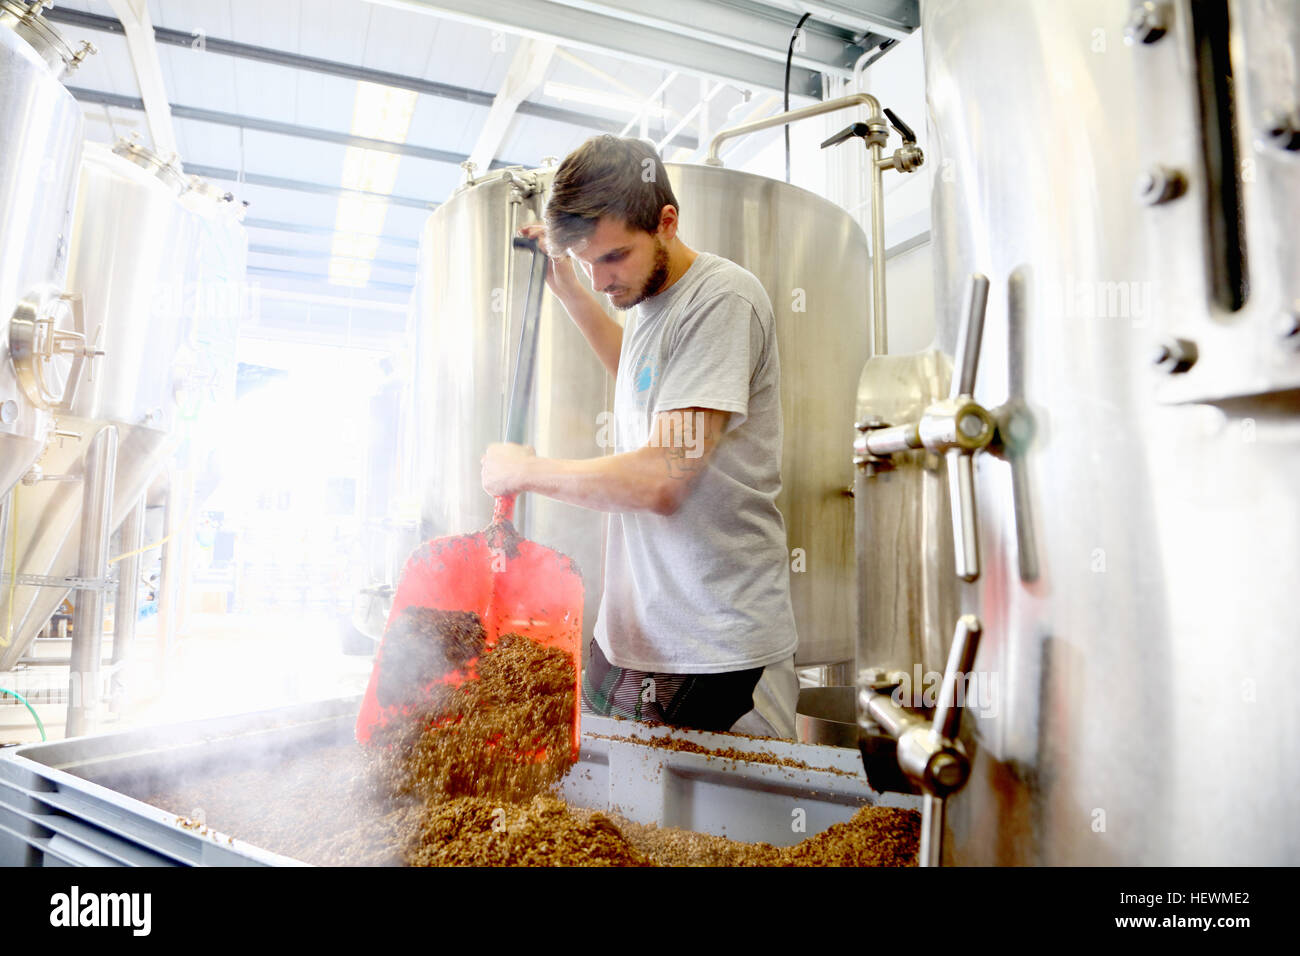 Trabajador de cervecería, vaciando los granos de mash tun Foto de stock